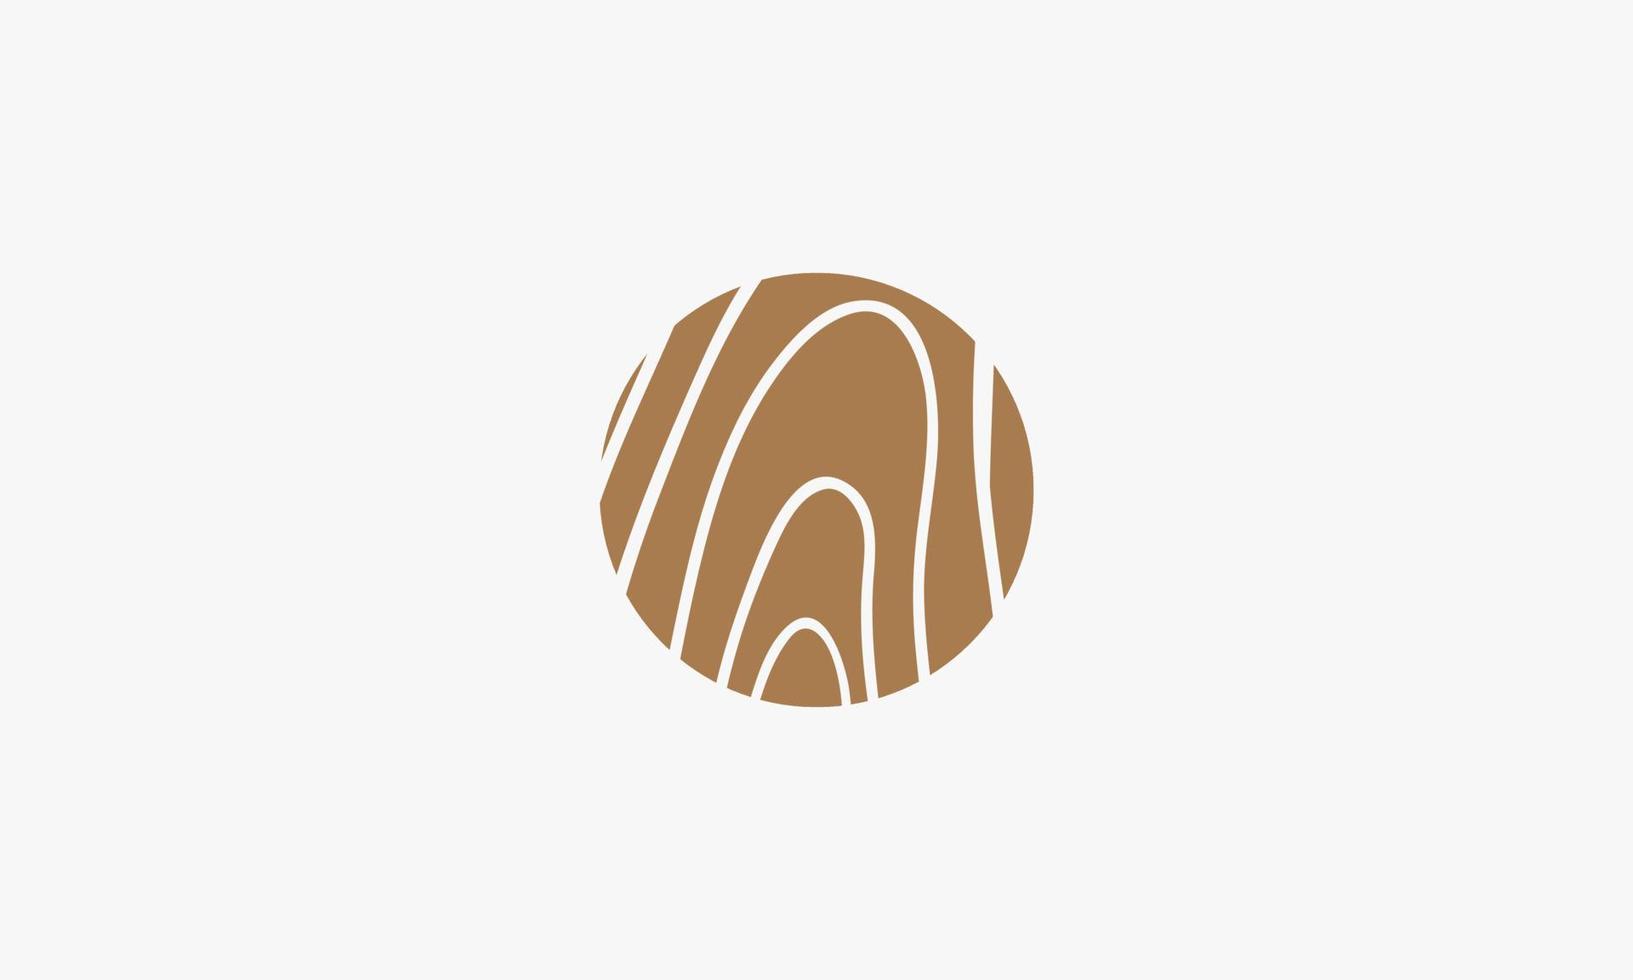 Holzfaser-Kreis-Logo-Design-Vektor. braune Textur Holz Illustration. vektor